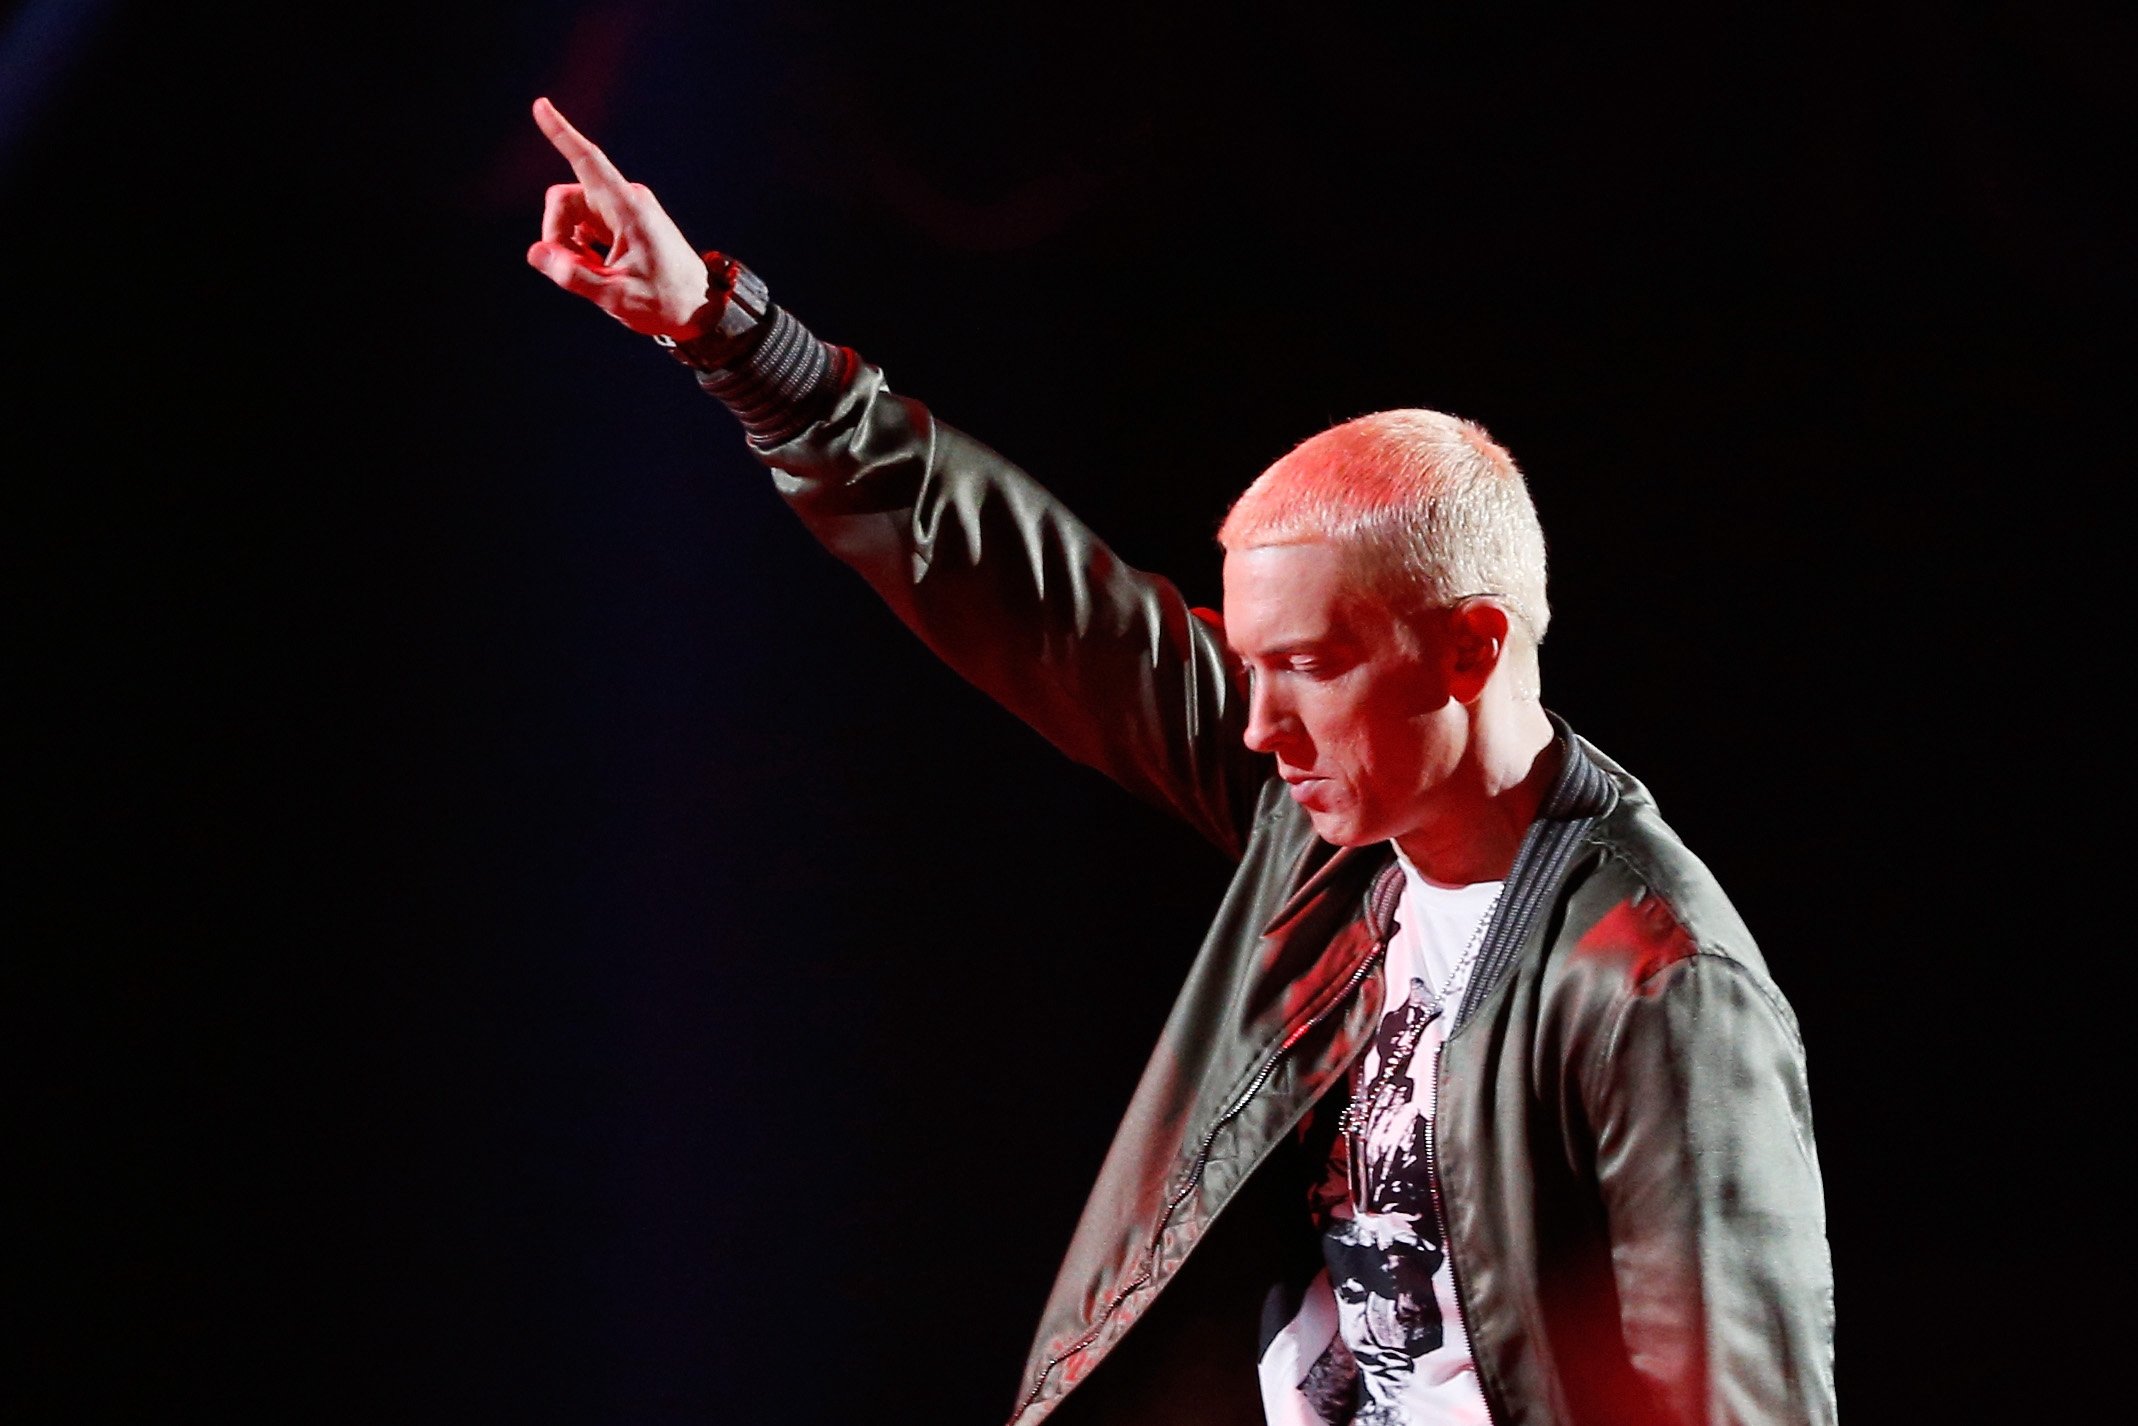 Eminem pointing up